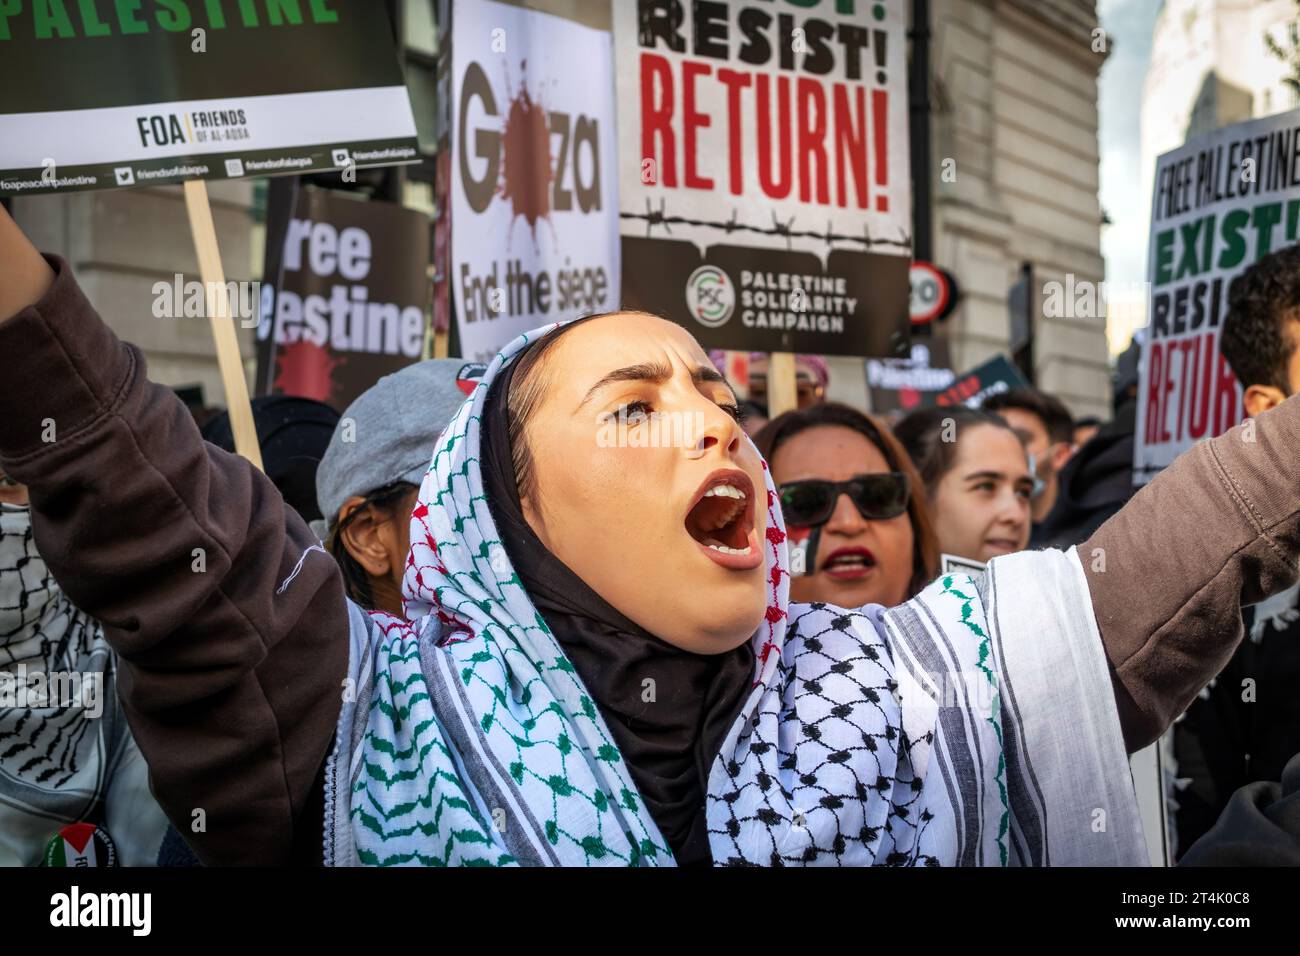 Mehrere Tausend Menschen marschierten vom BBC-Sendehaus zur Downing Street, um ein freies Palästina zu fordern und die israelische Belagerung von Gaza zu beenden. Stockfoto